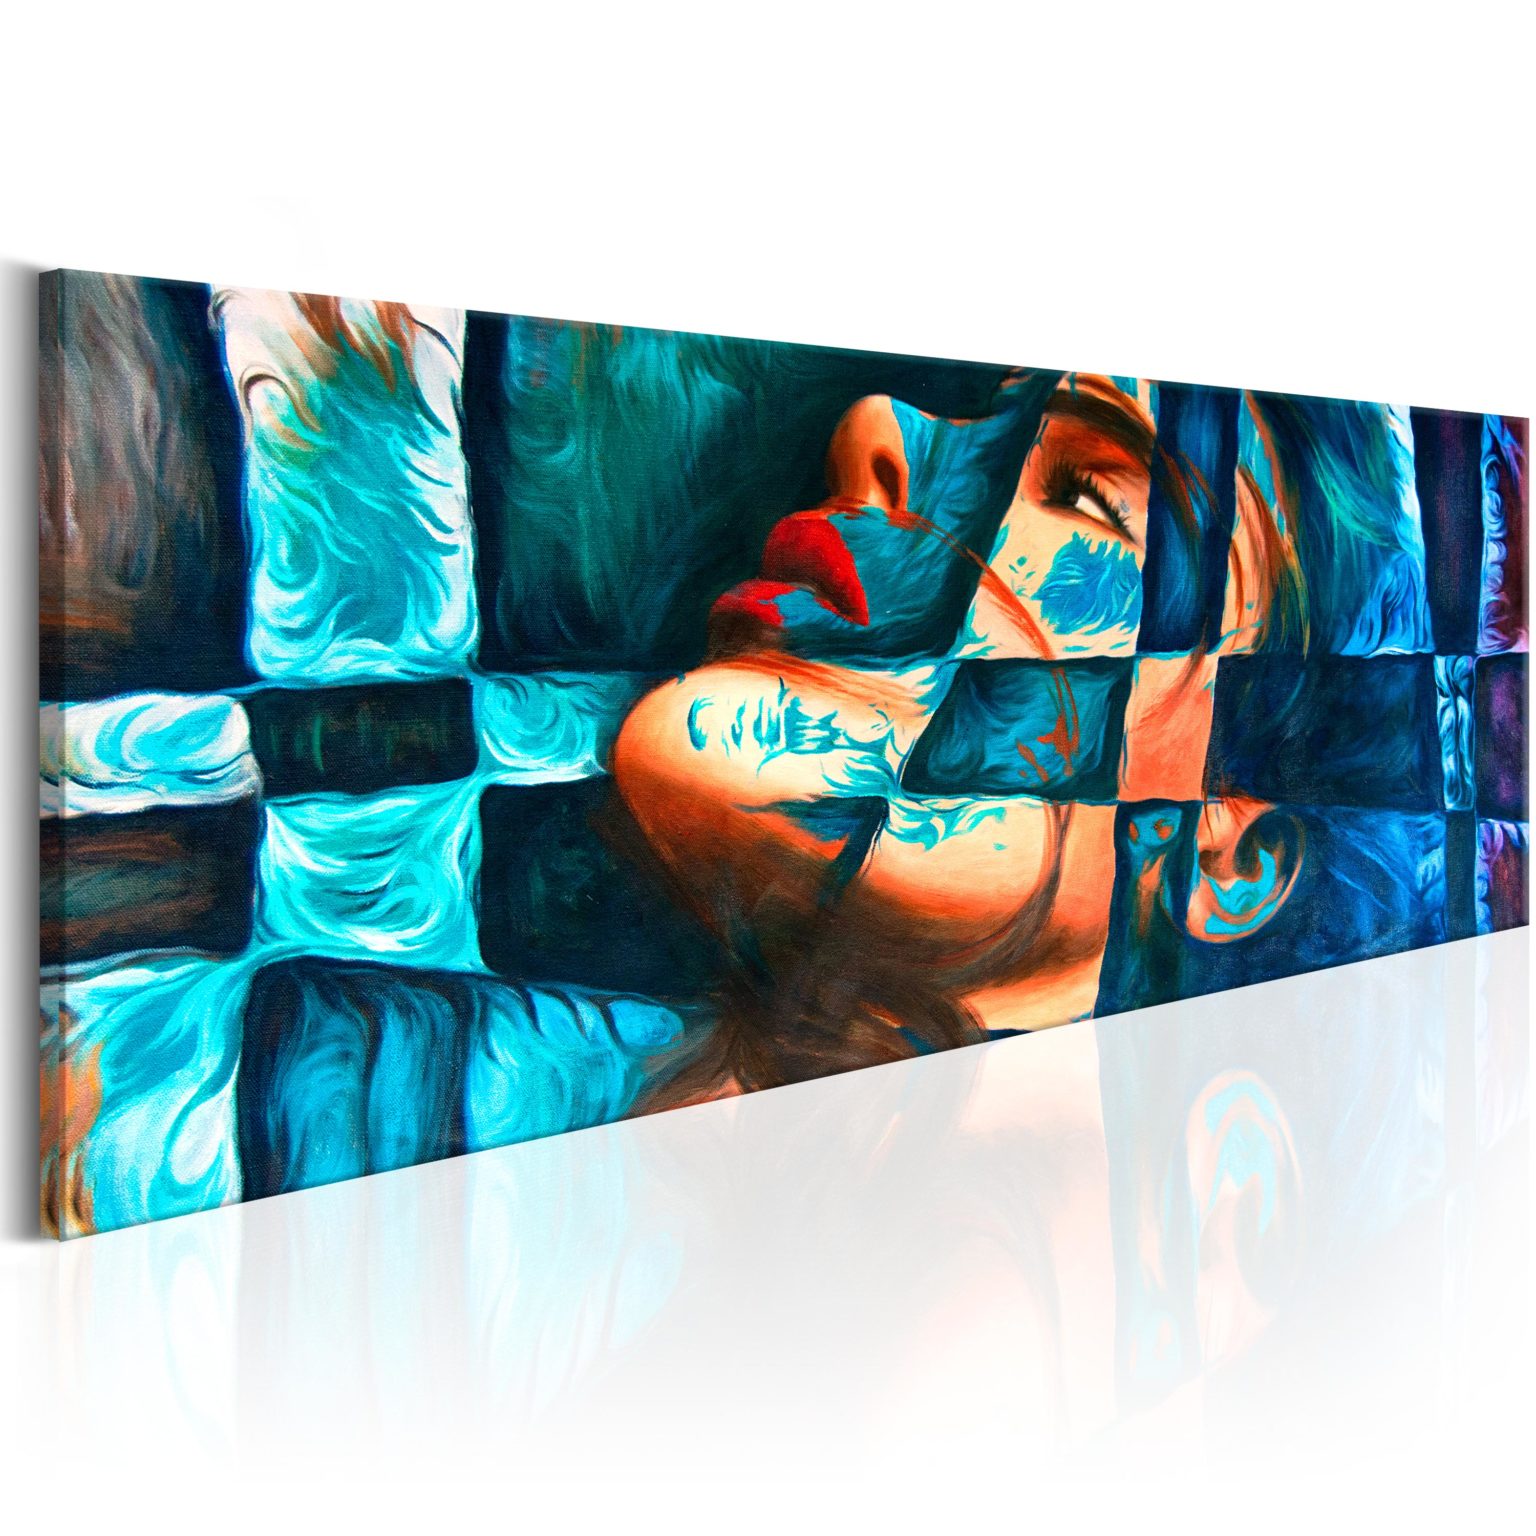 Tableau - Azure Trap fait partie des tableaux murales de la collection de worldofwomen découvrez ce magnifique tableau exclusif chez nous